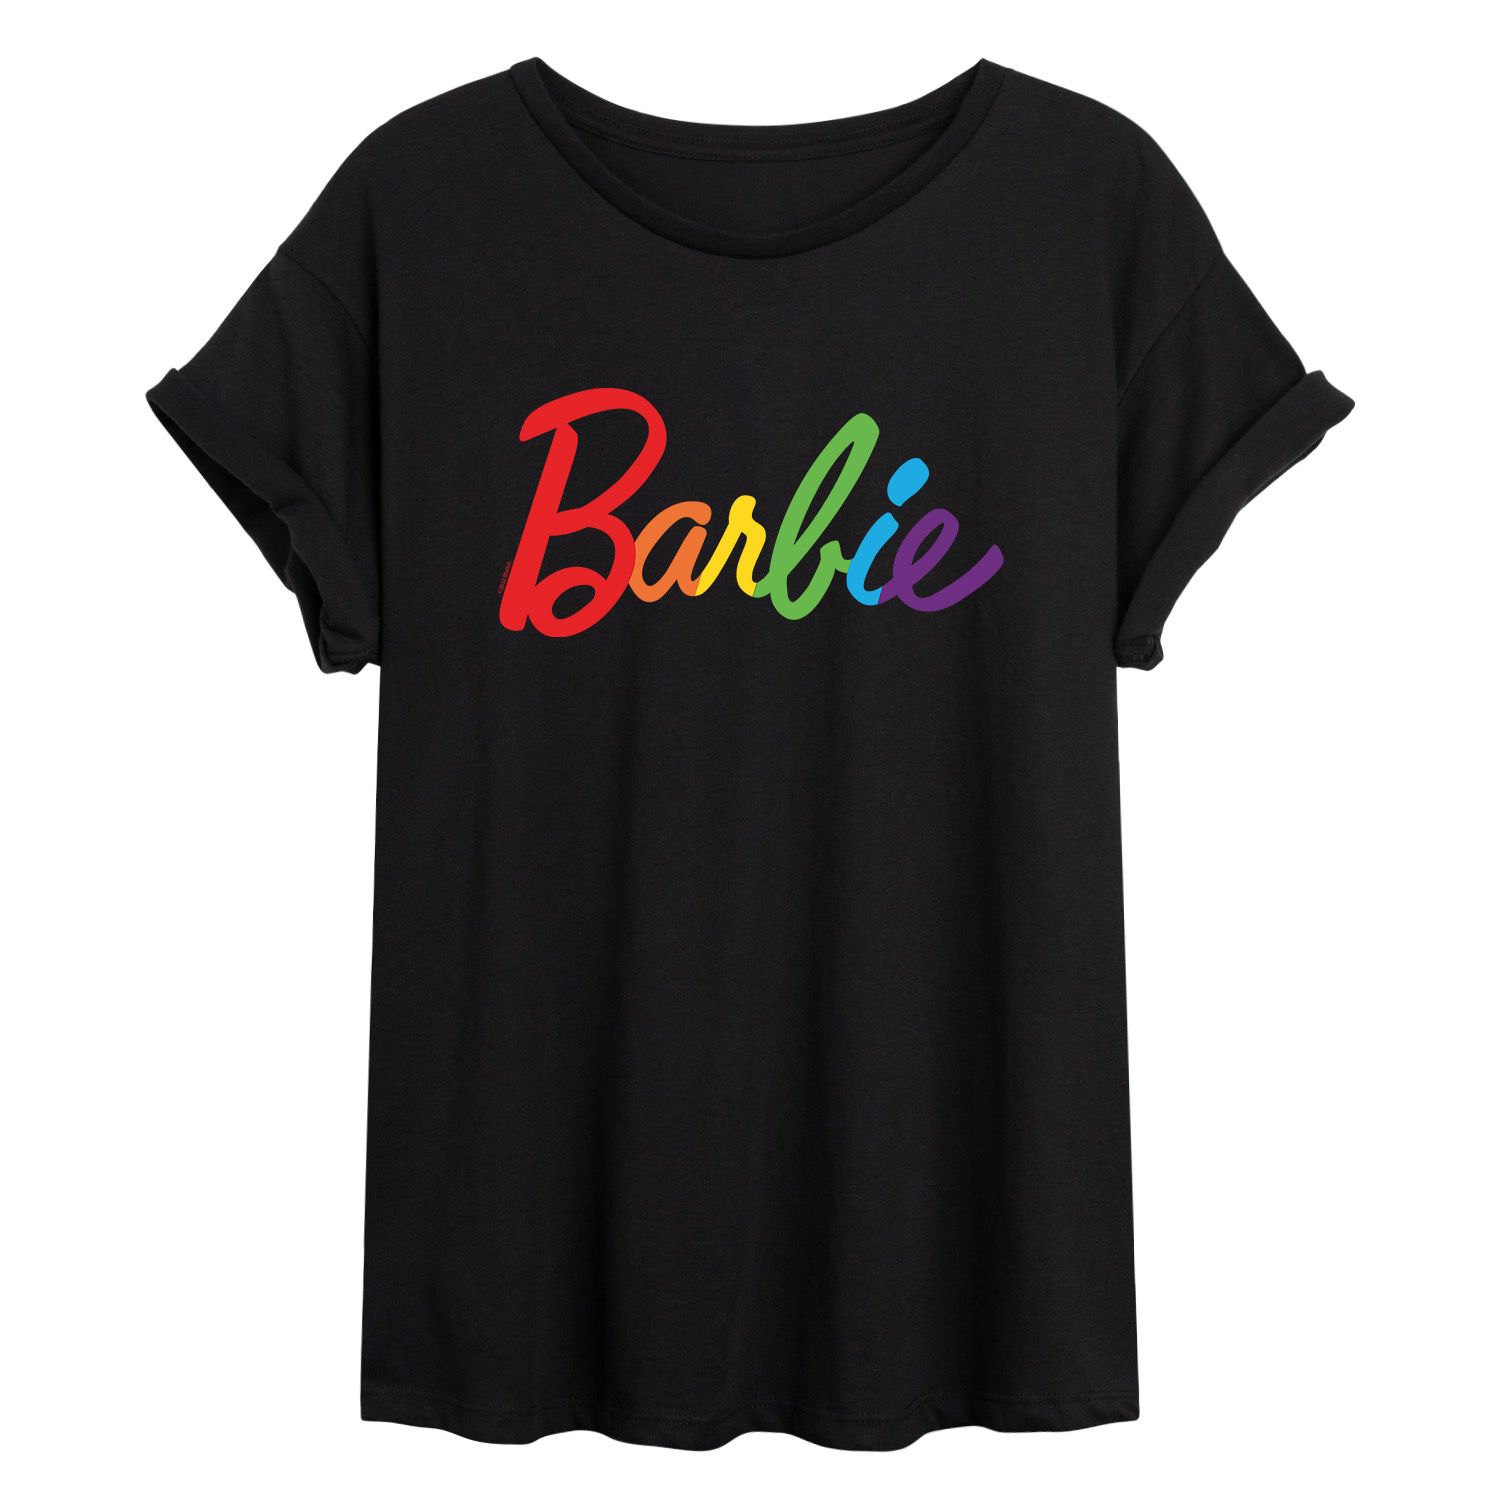 Футболка с логотипом Barbie Rainbow Pride для юниоров Licensed Character классическая футболка с логотипом barbie для юниоров licensed character